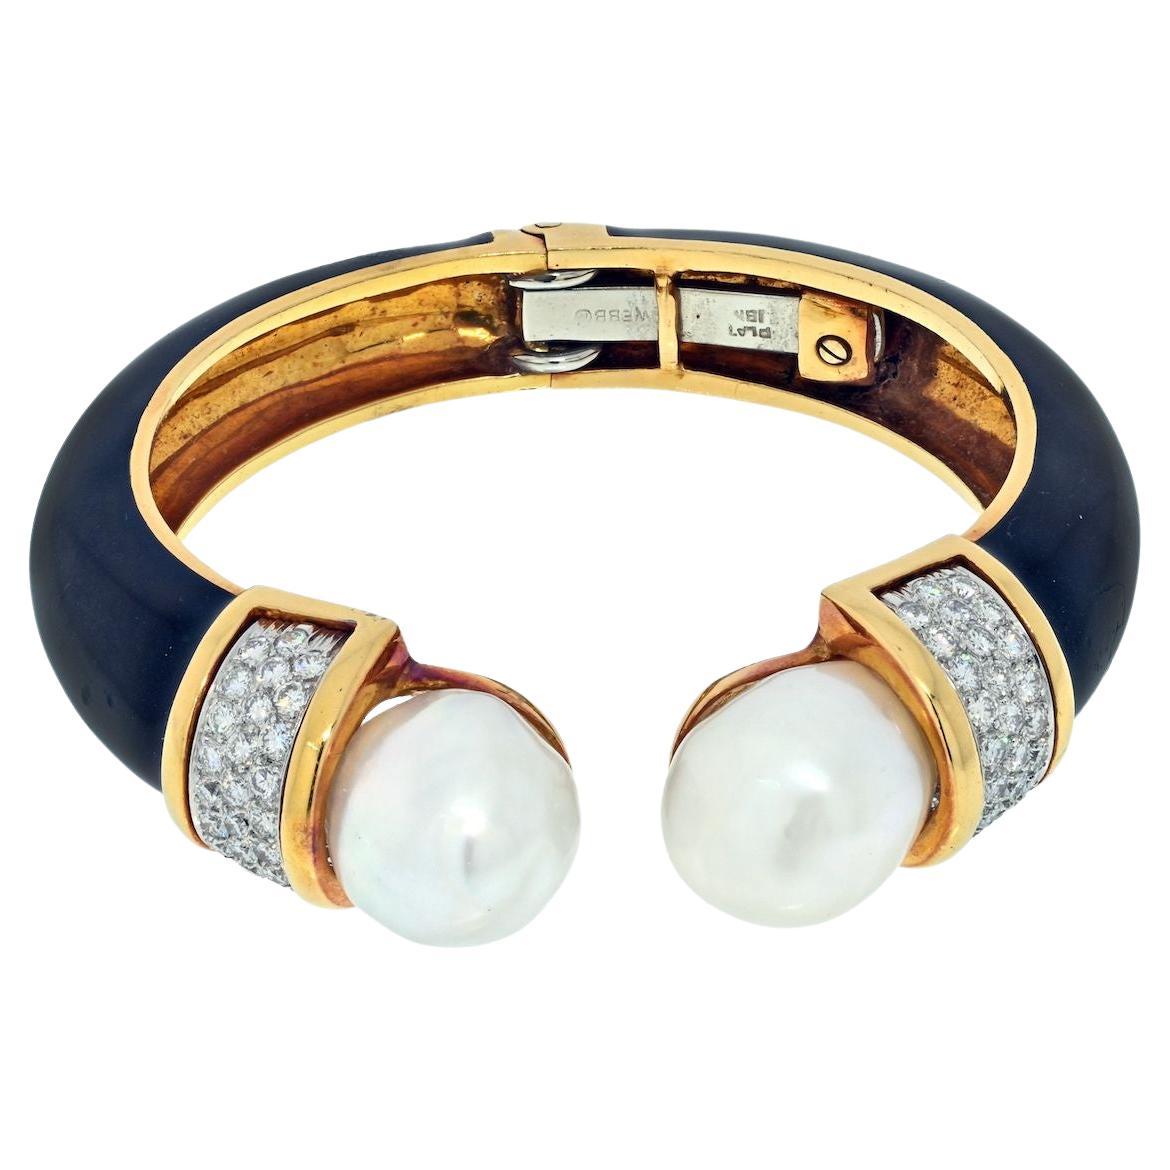 David Webb Armband aus Platin und 18 Karat Gelbgold, schwarze Emaille und Perle mit Diamanten